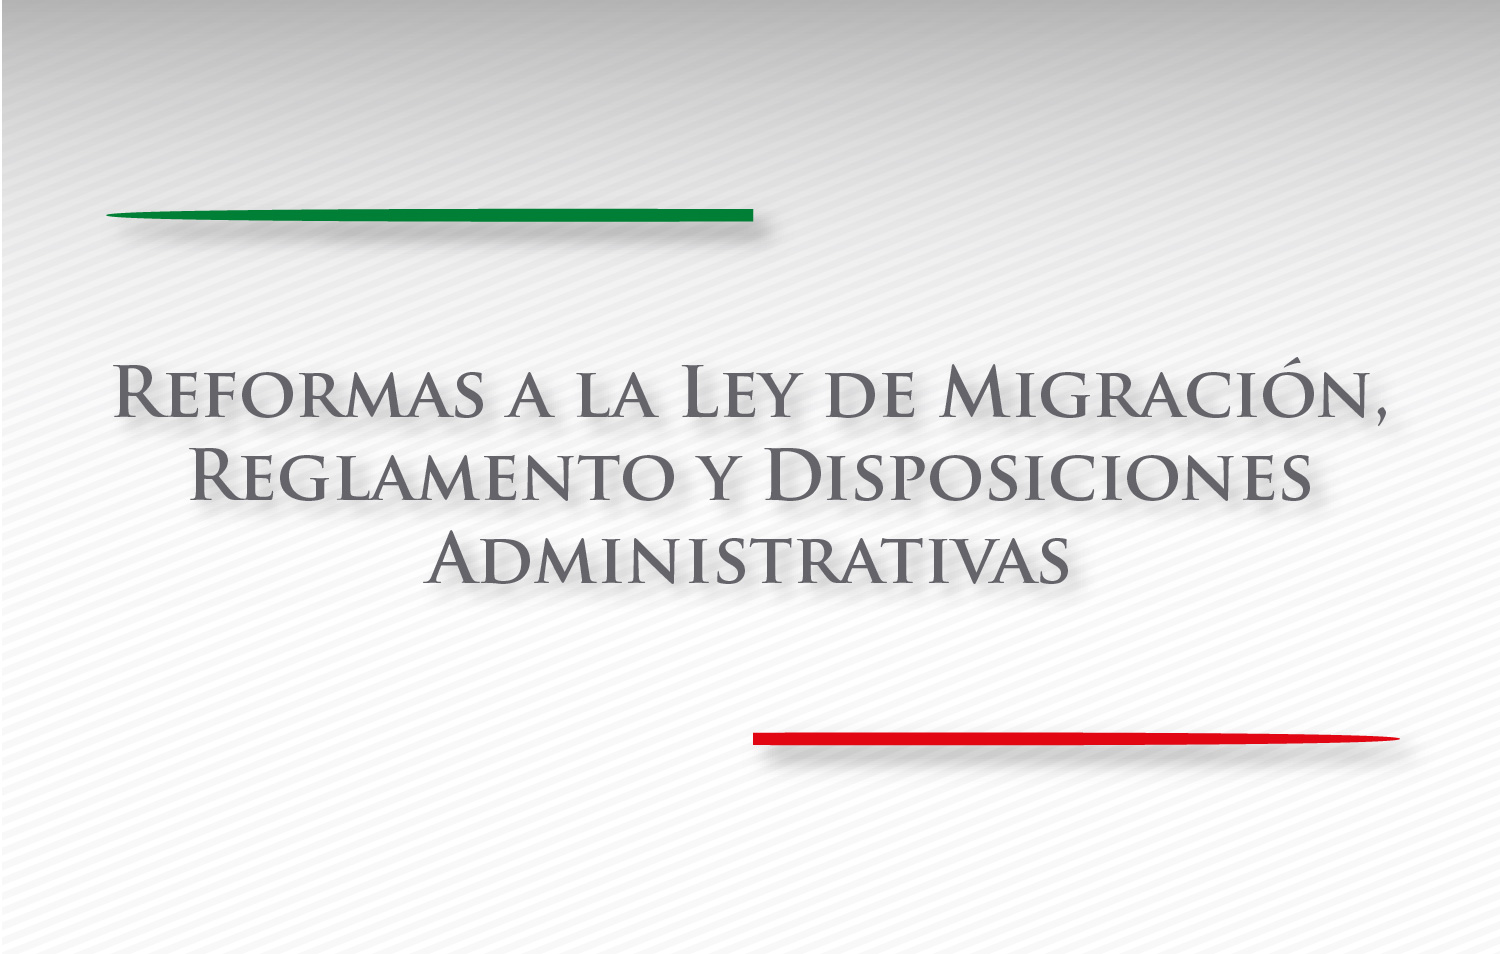 Reformas a la Ley de Migración, Reglamento y Disposiciones administrativas